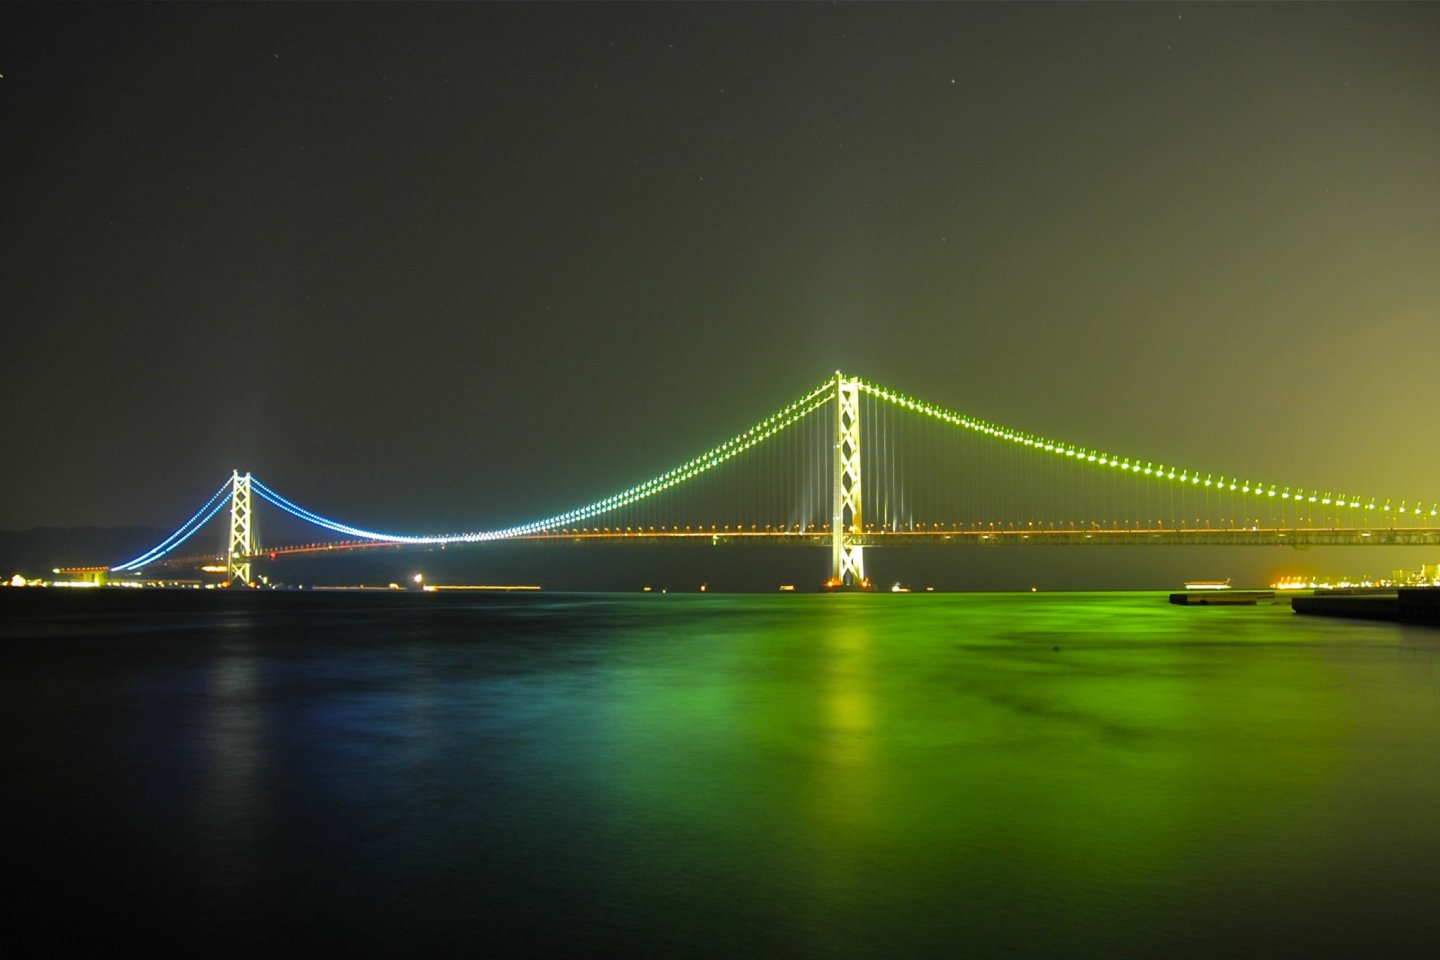 The Akashi Strait Bridge